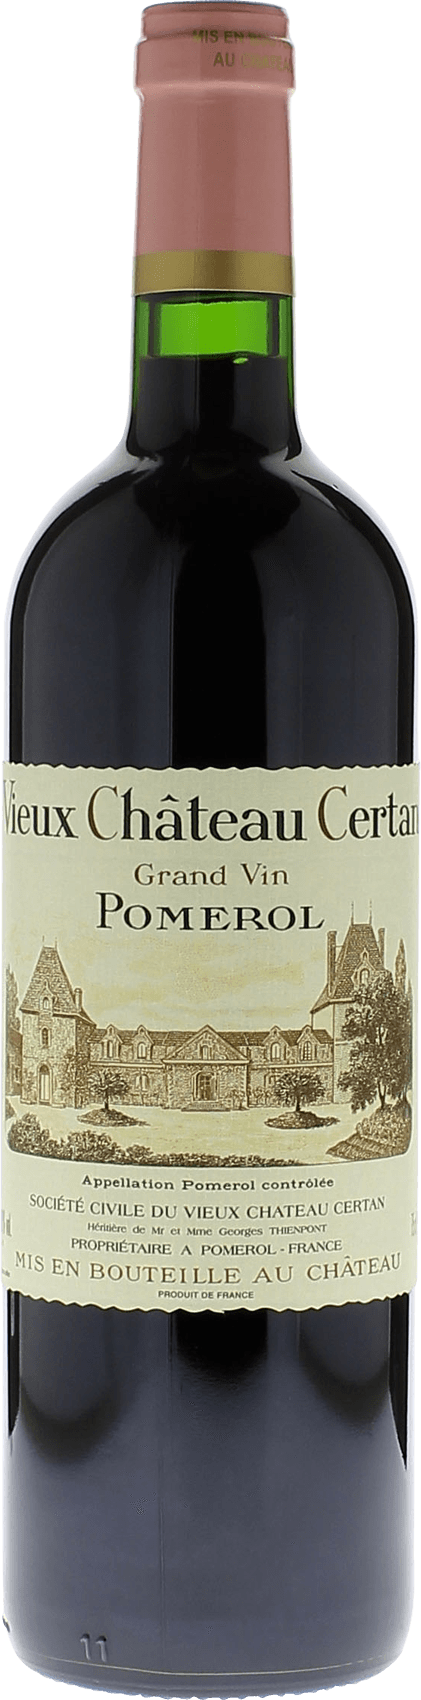 Vieux chteau  certan 1998  Pomerol, Bordeaux rouge